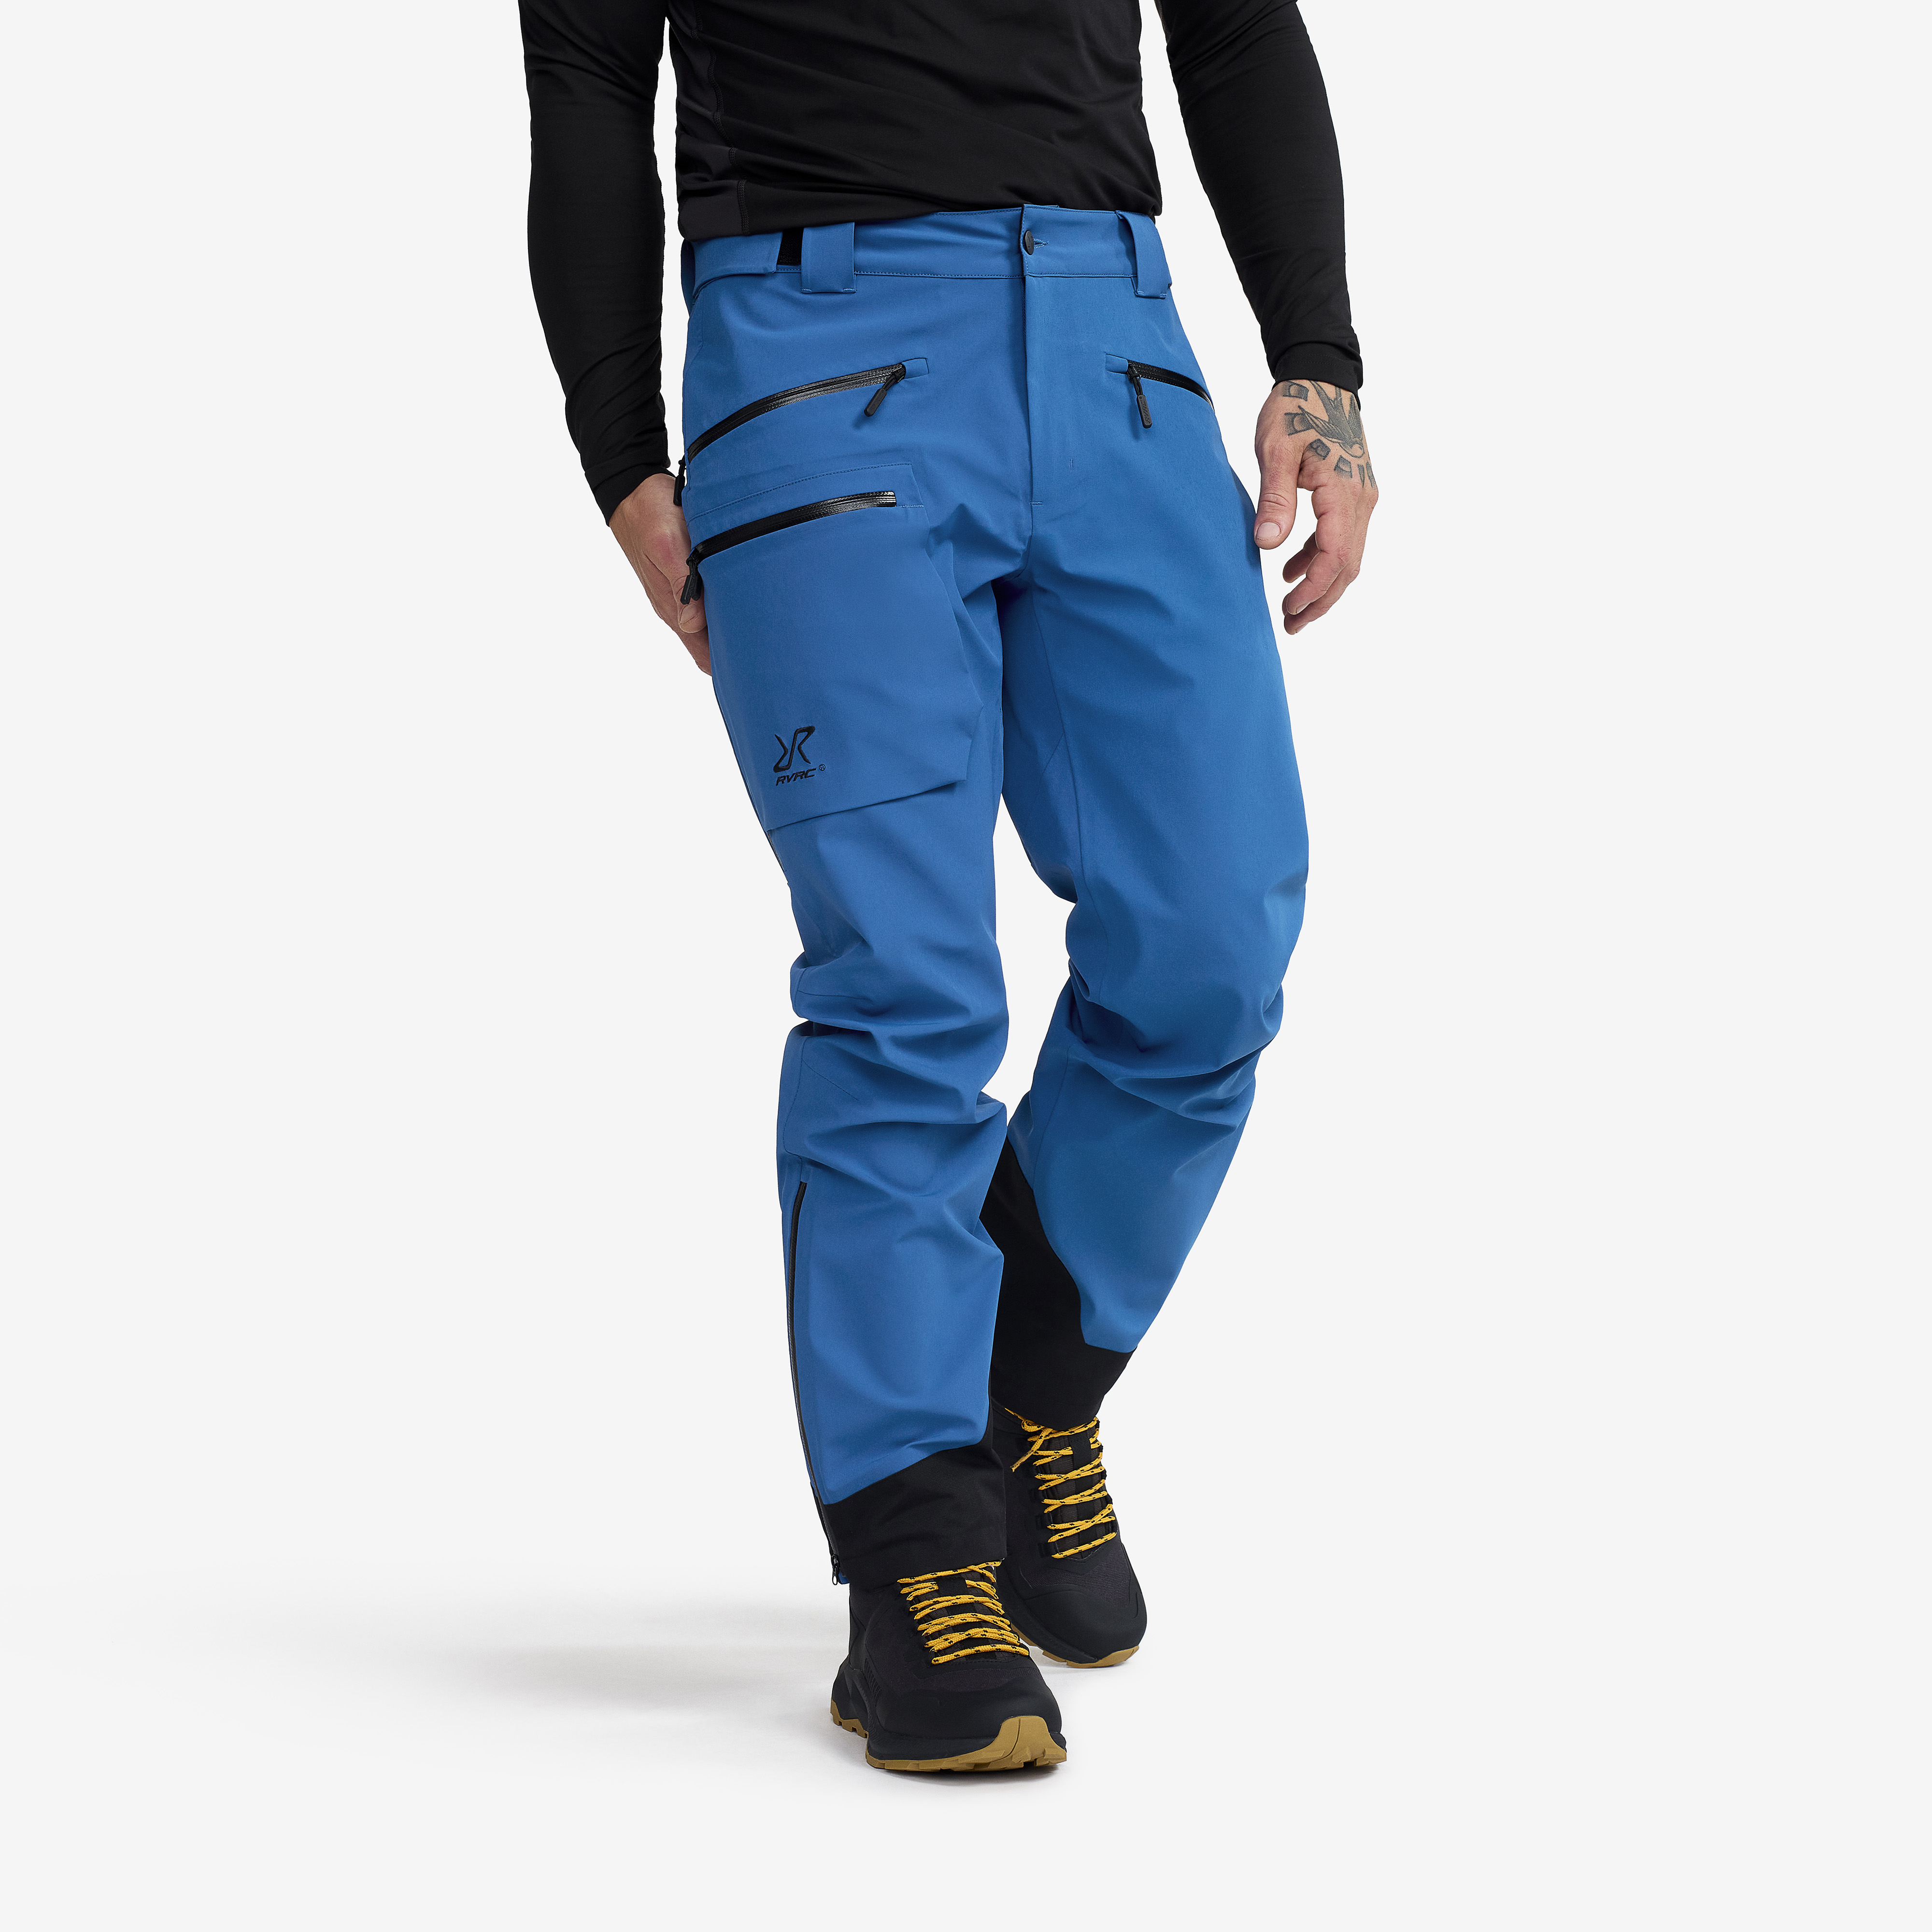 Aphex Pro Pants Classic Blue Pánské